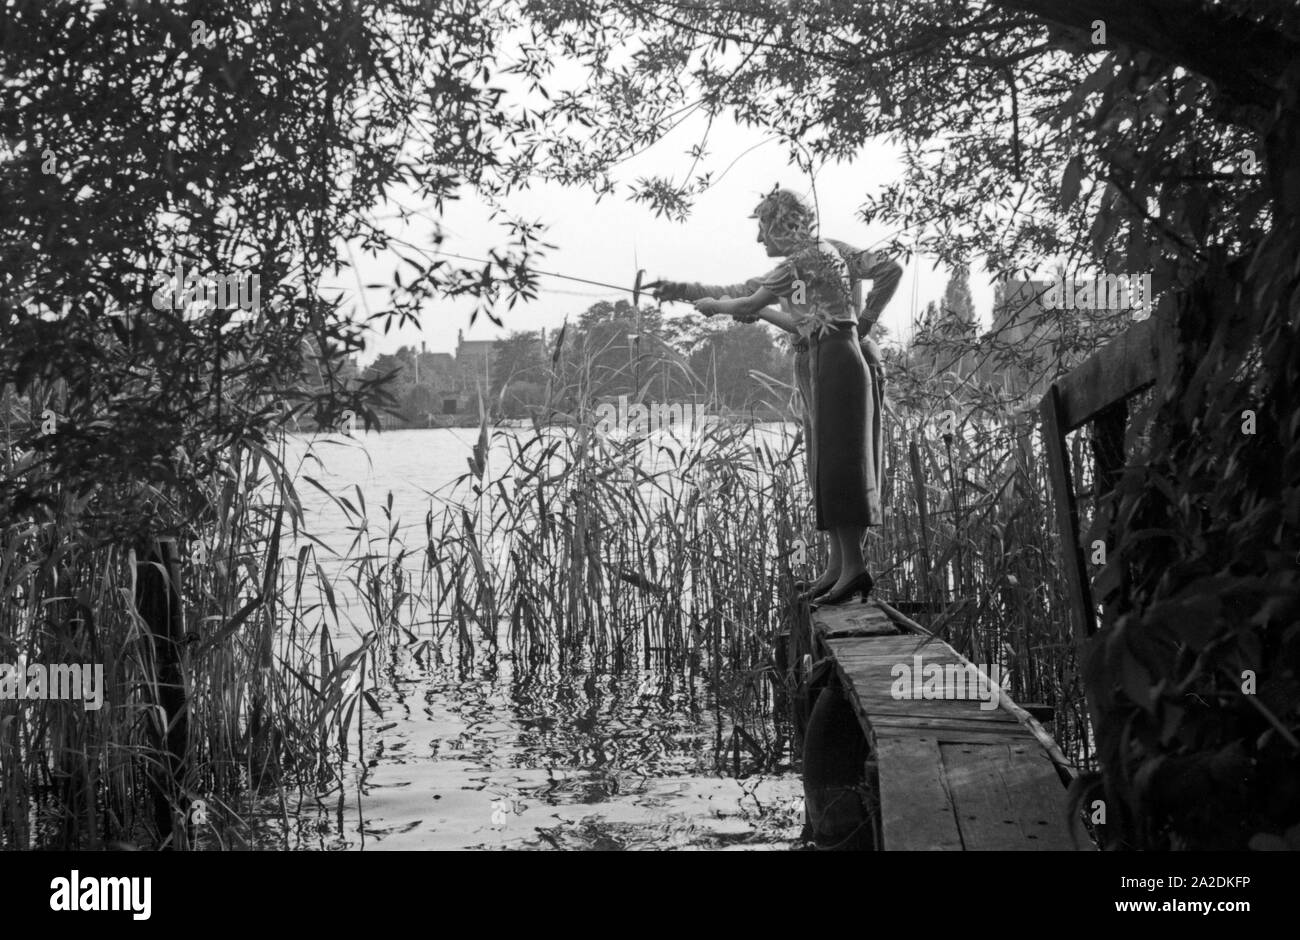 Eine Frau hört sich Tipps und Belehrungen männlicher Profi Angler eine bei einem Angelwettbewerb, Deutschland 1930er Jahre. Eine Frau, die zuhören und lernen von ihren männlichen Konkurrenten an ein Angeln Contest, Deutschland 1930. Stockfoto